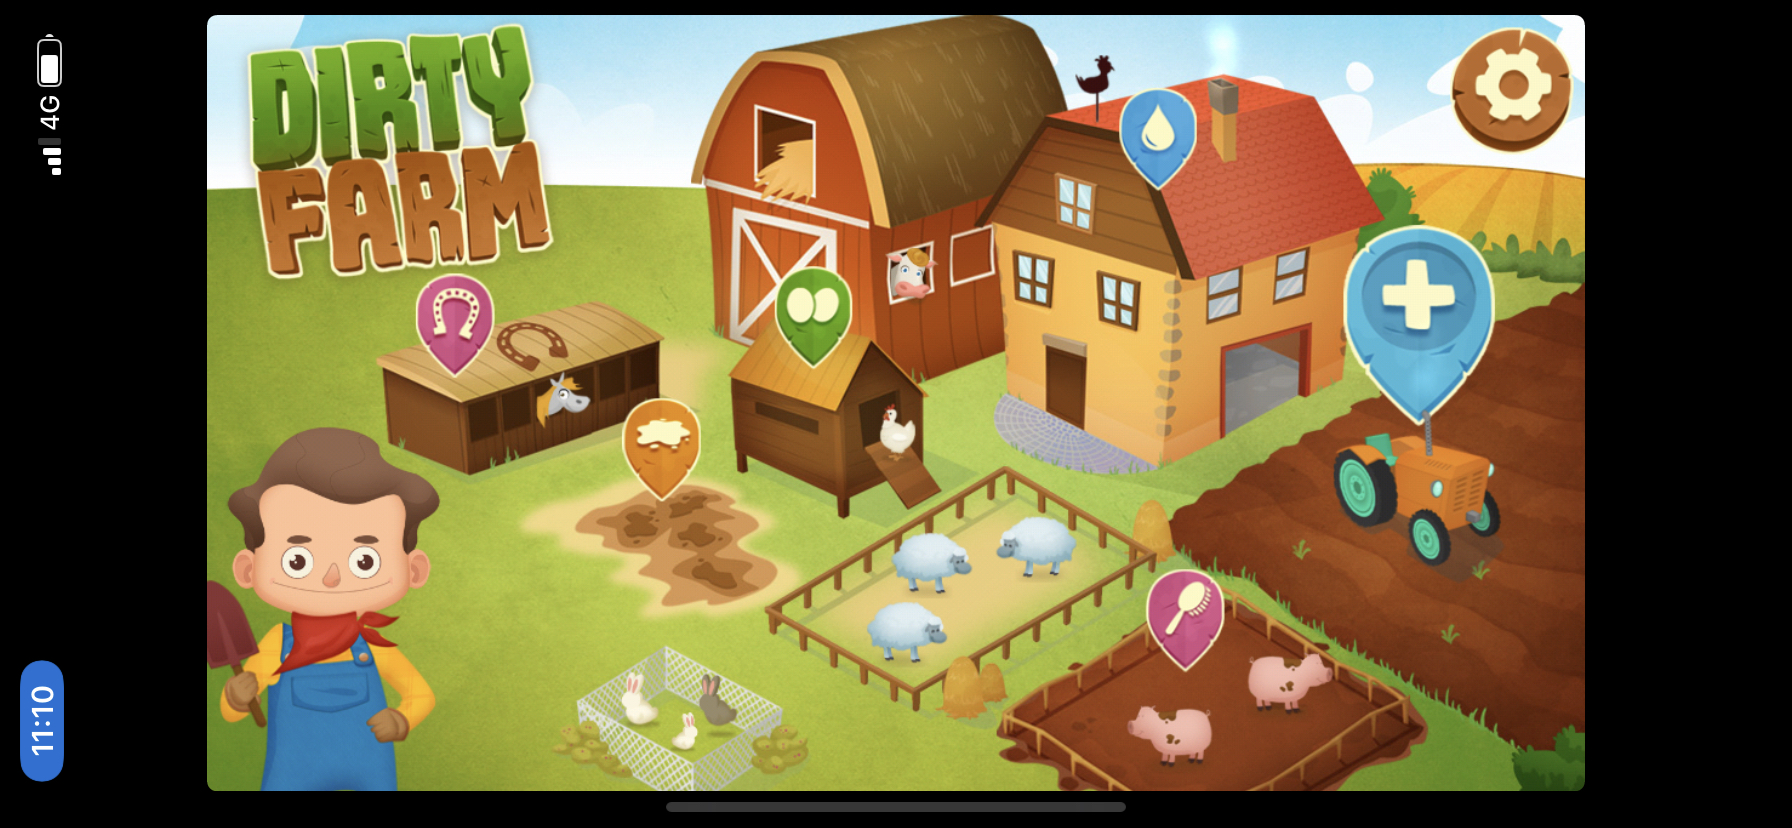 Dirty Farm home screen